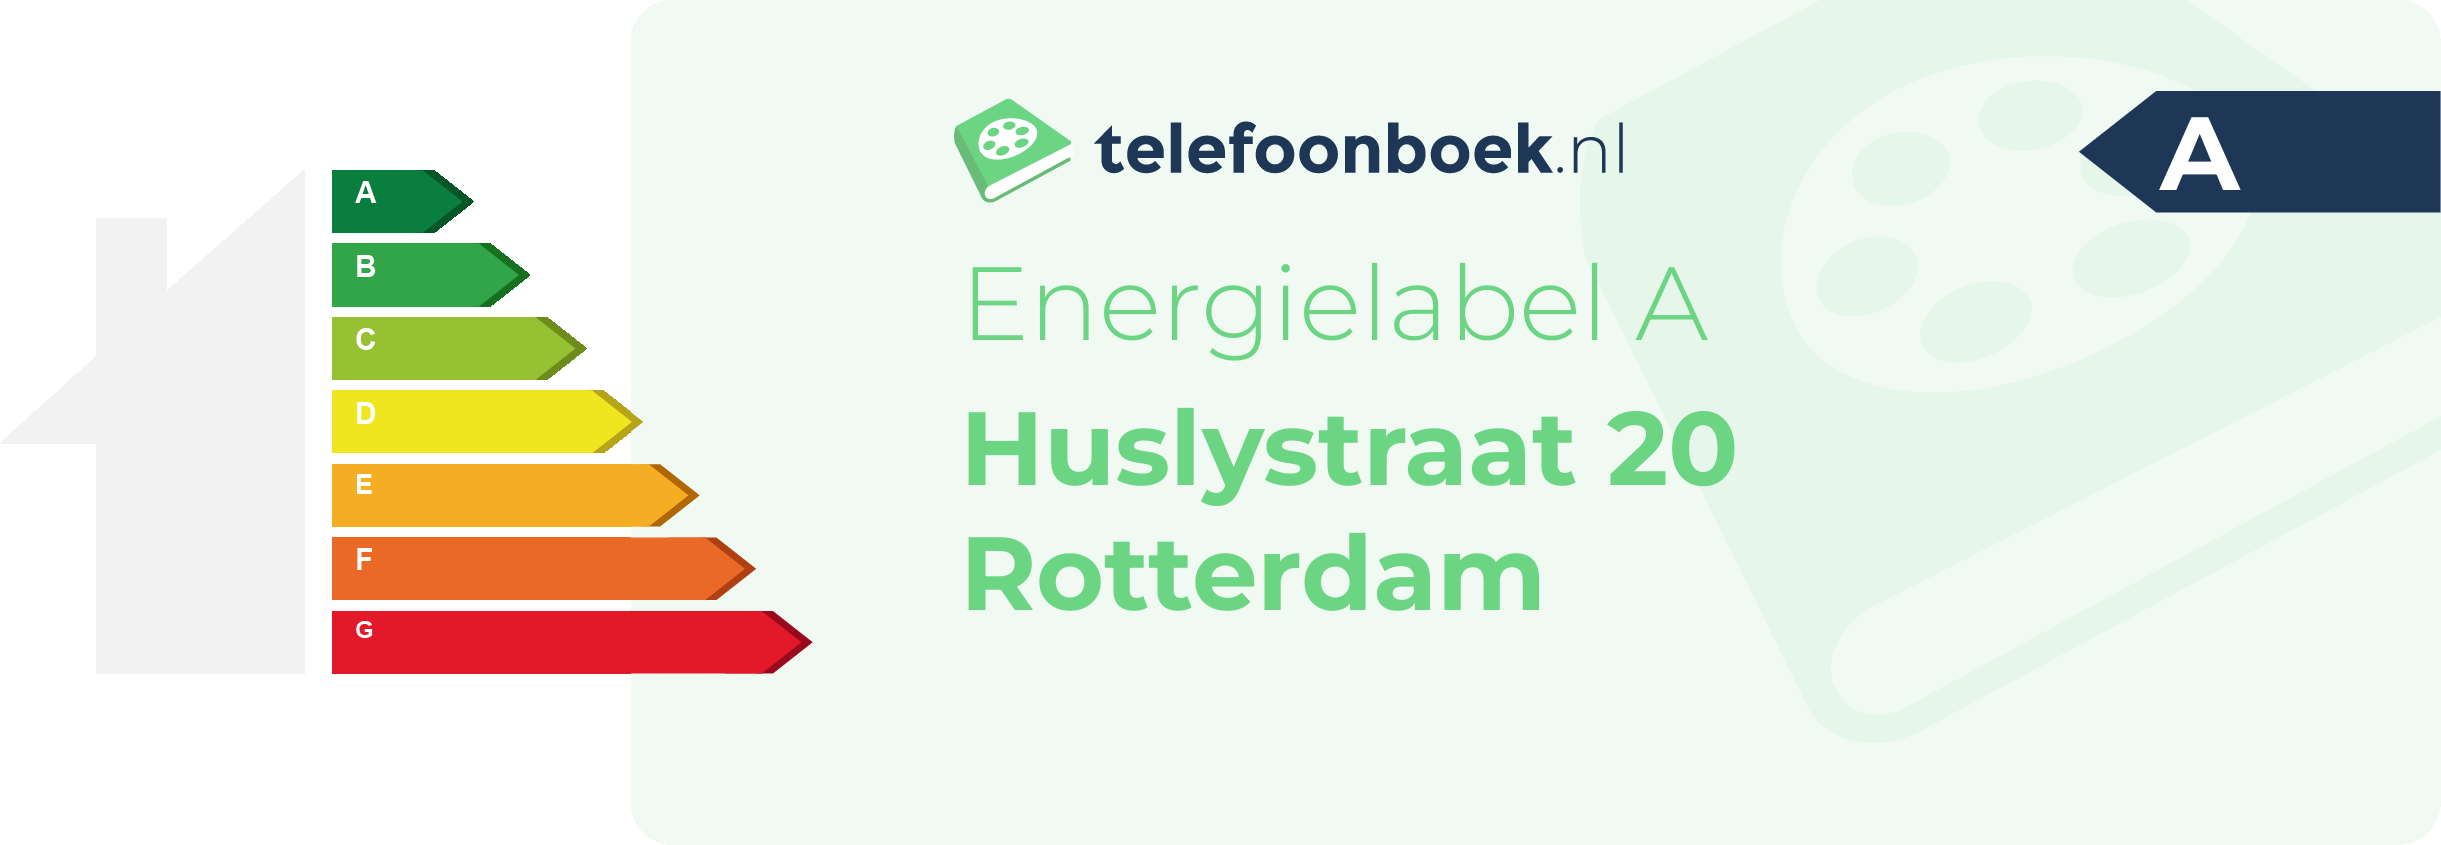 Energielabel Huslystraat 20 Rotterdam